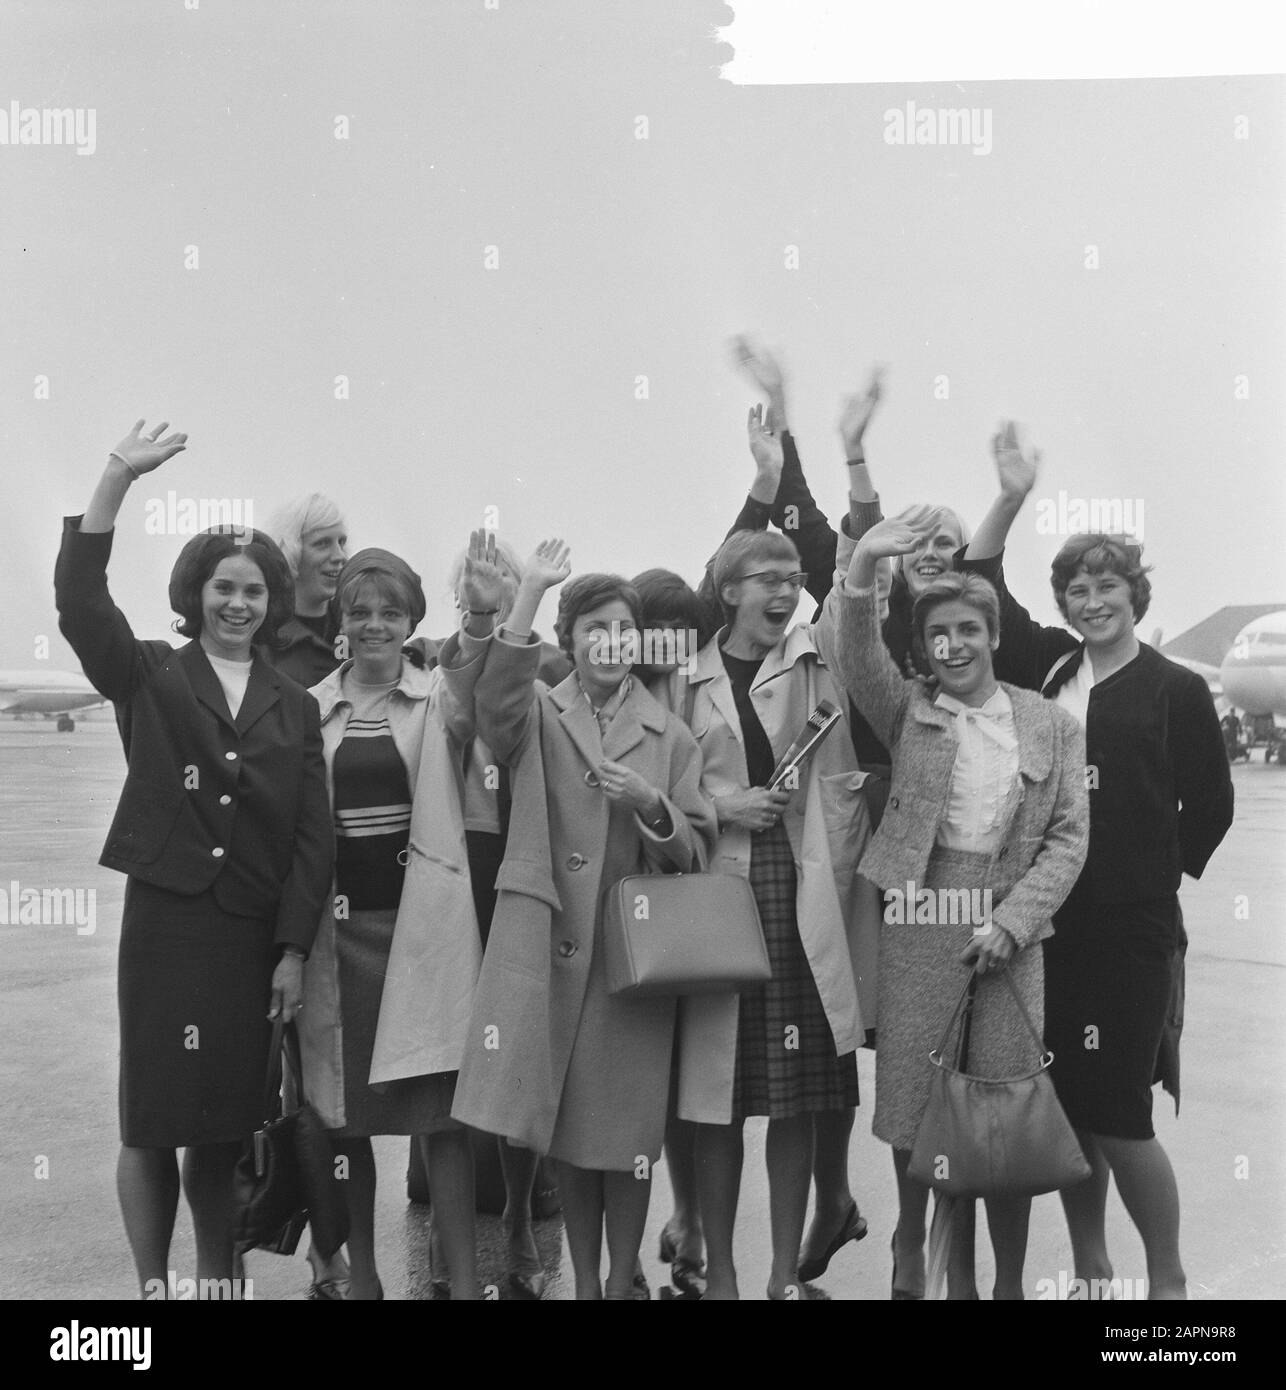 Départ équipe hollandaise d'athlétisme pour femmes à Kassel Date: 17 septembre 1965 mots clés: Athlètes, portraits de groupe Banque D'Images